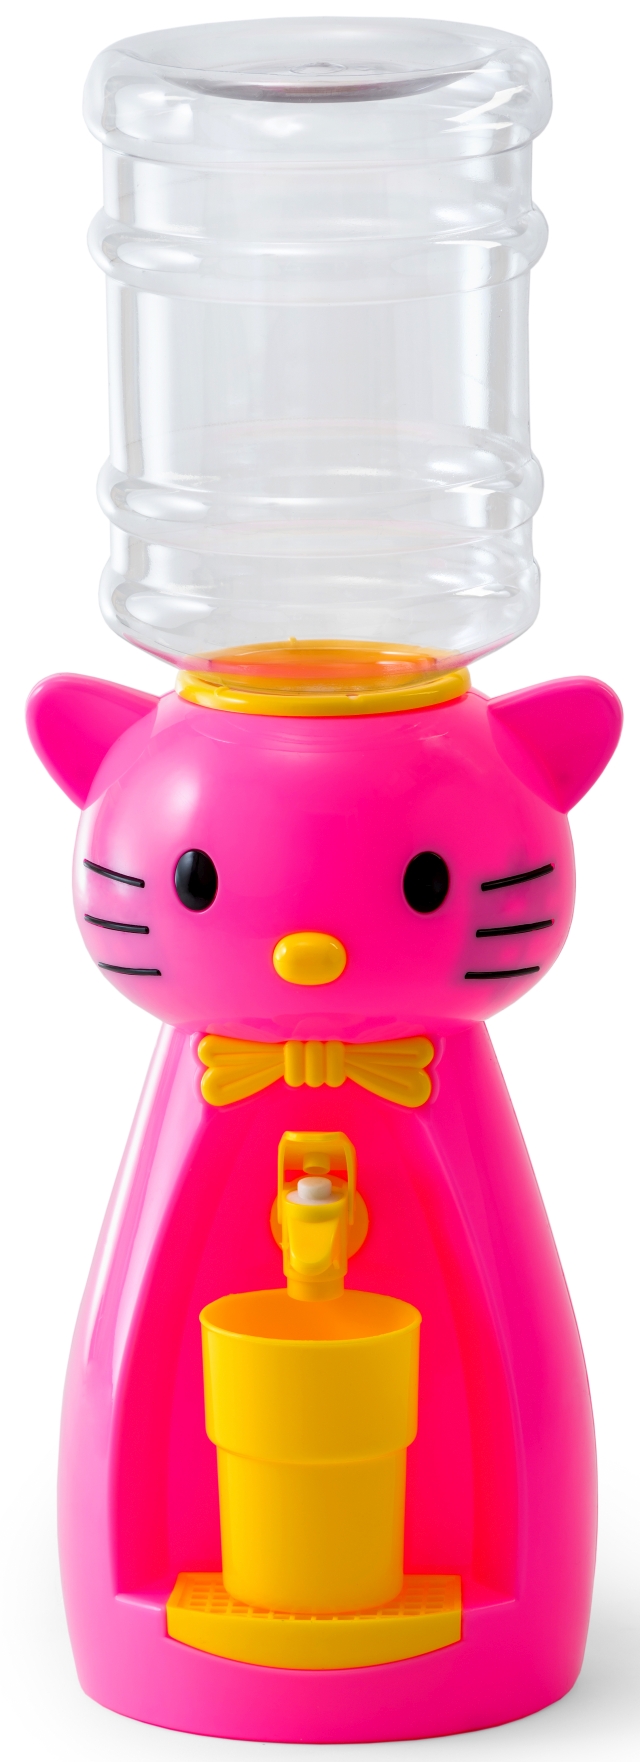 Детский кулер для воды VATTEN kids Kitty Pink по доступной цене в Москве от магазина "Море Воды"